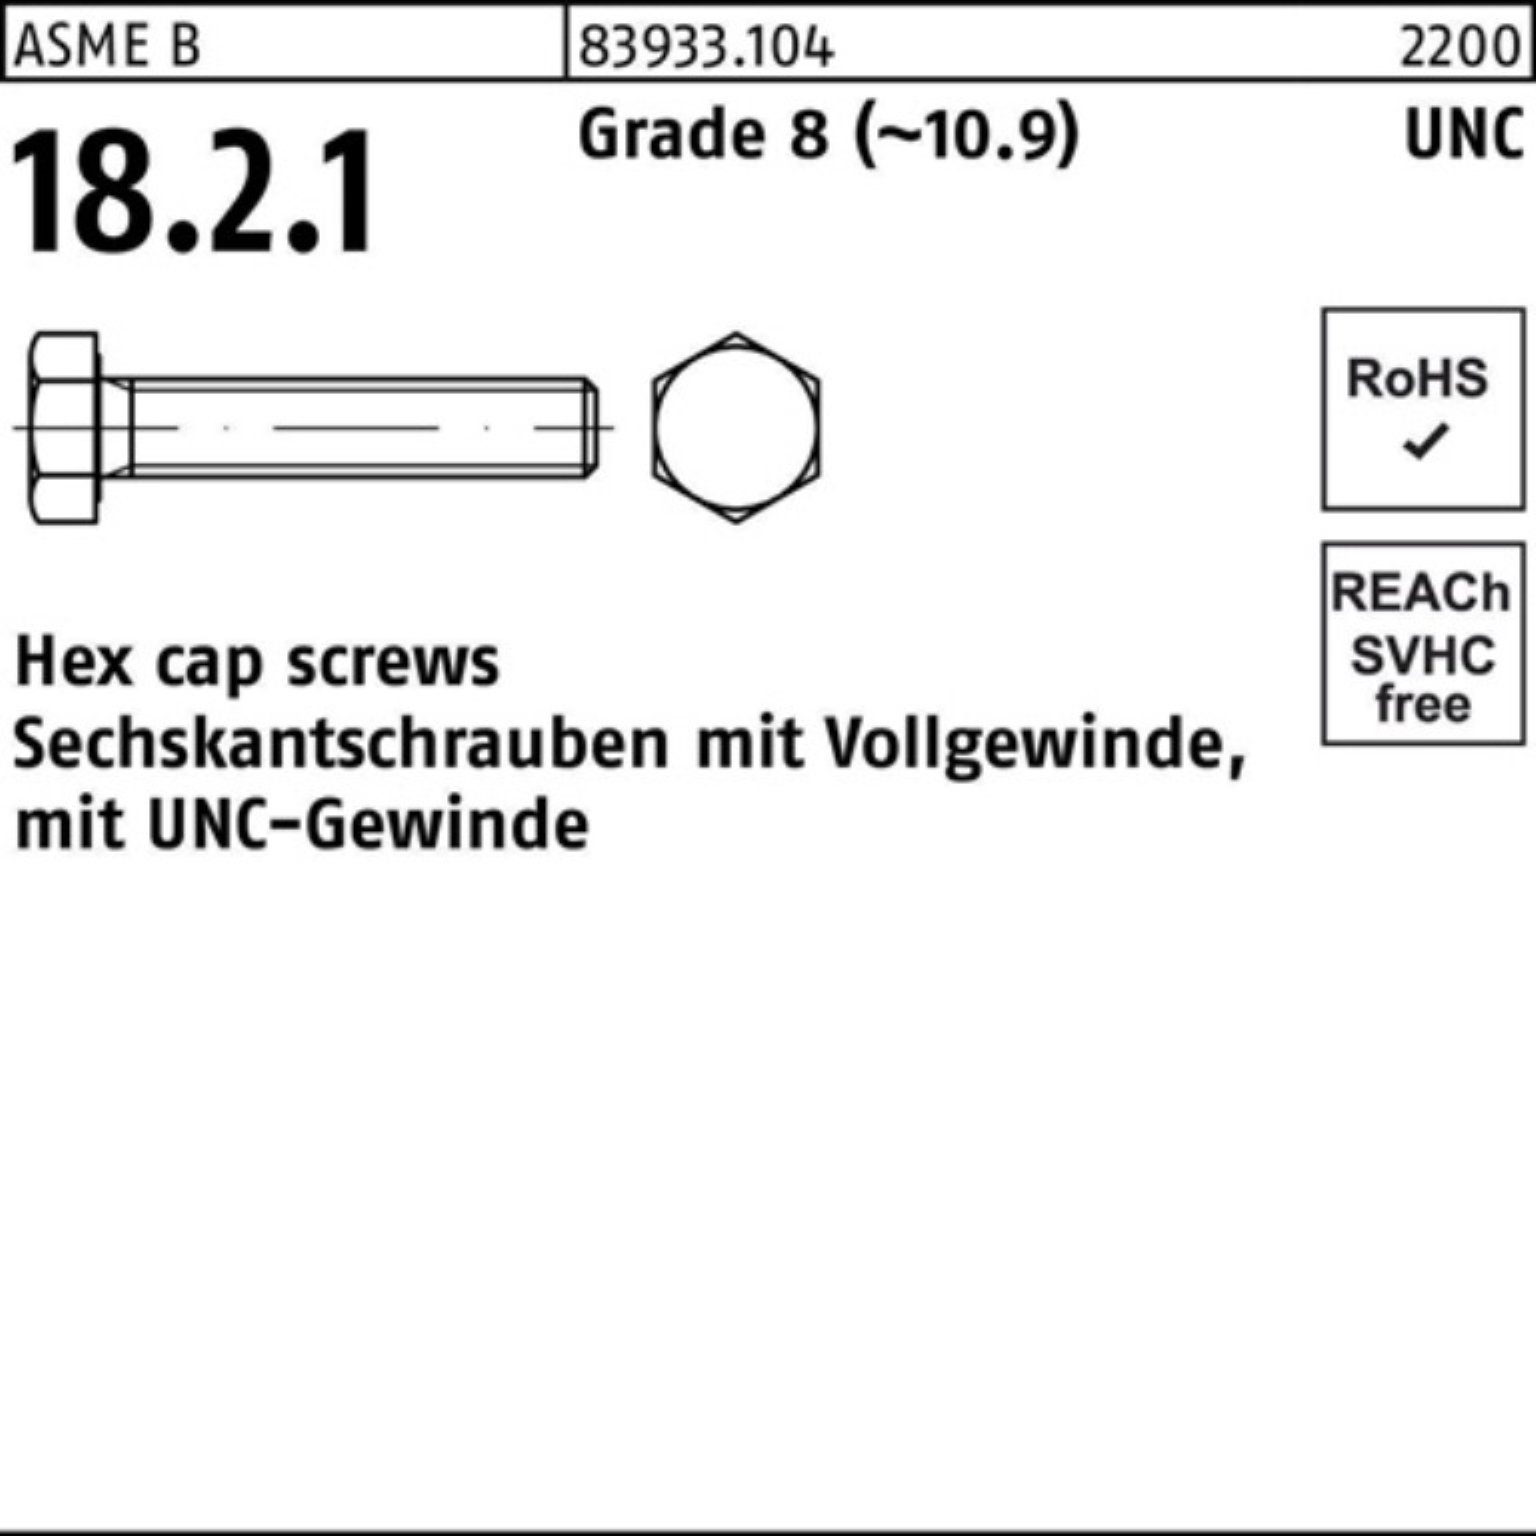 Reyher Sechskantschraube 100er Pack Sechskantschraube R 83933 UNC-Gewinde VG 7/16x 3/4 Grade 8